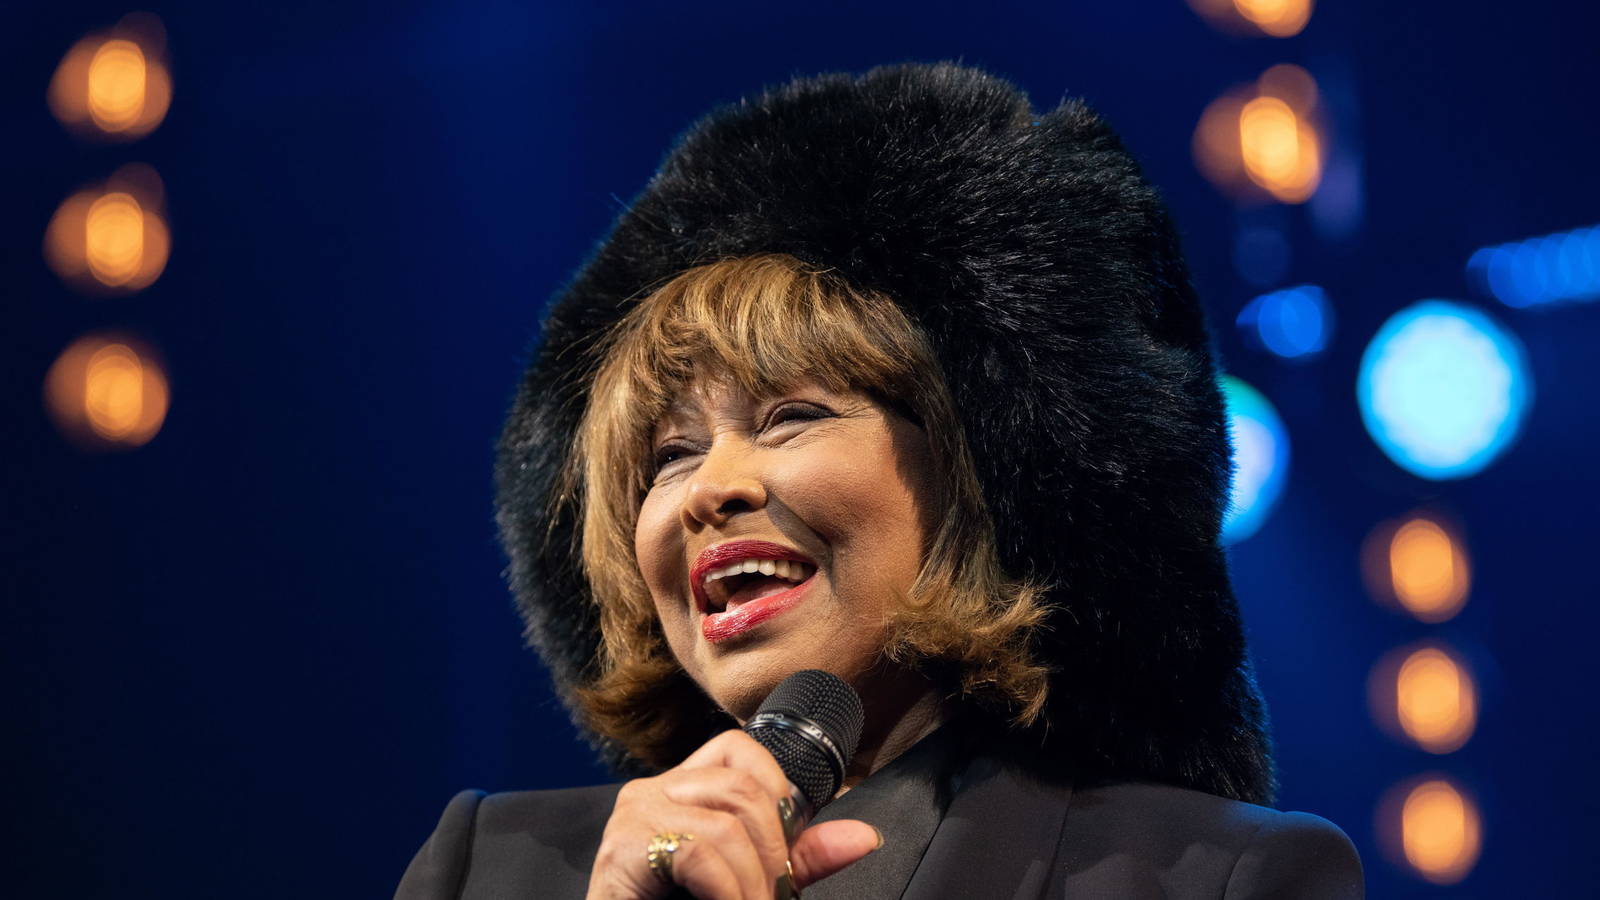 Tina Turner cumple 80 años, la mujer del poderoso espectáculo